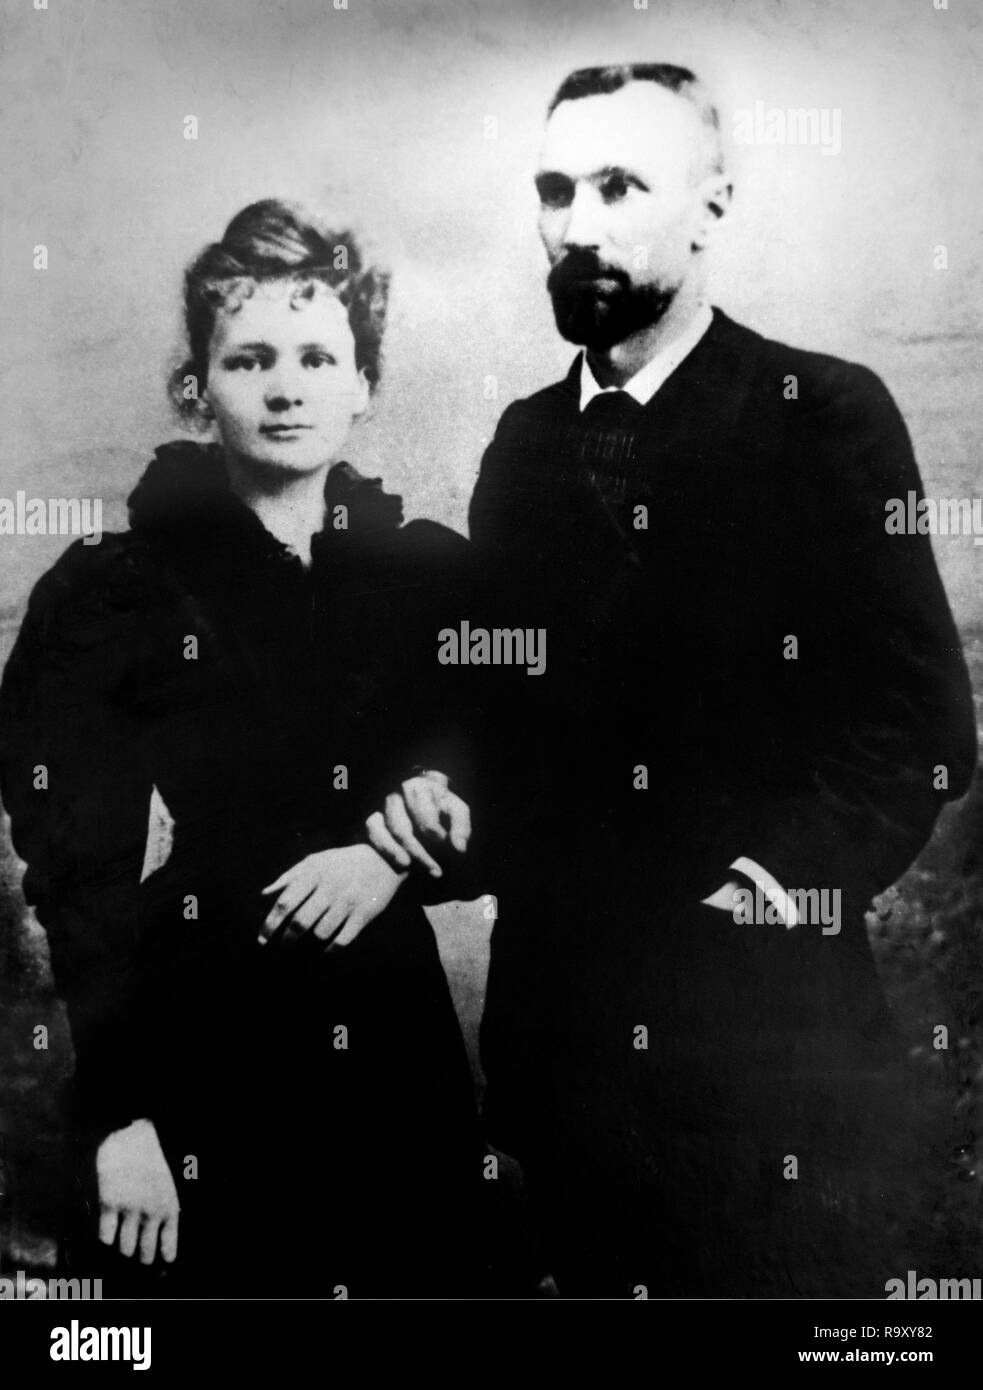 Pierre e Marie Curie. Il scienziato vincitore del premio Nobel, Marie Skłodowska Curie (1867-1934) e suo marito Pierre Curie (1859-1906). Foto scattata nel 1895. Foto Stock